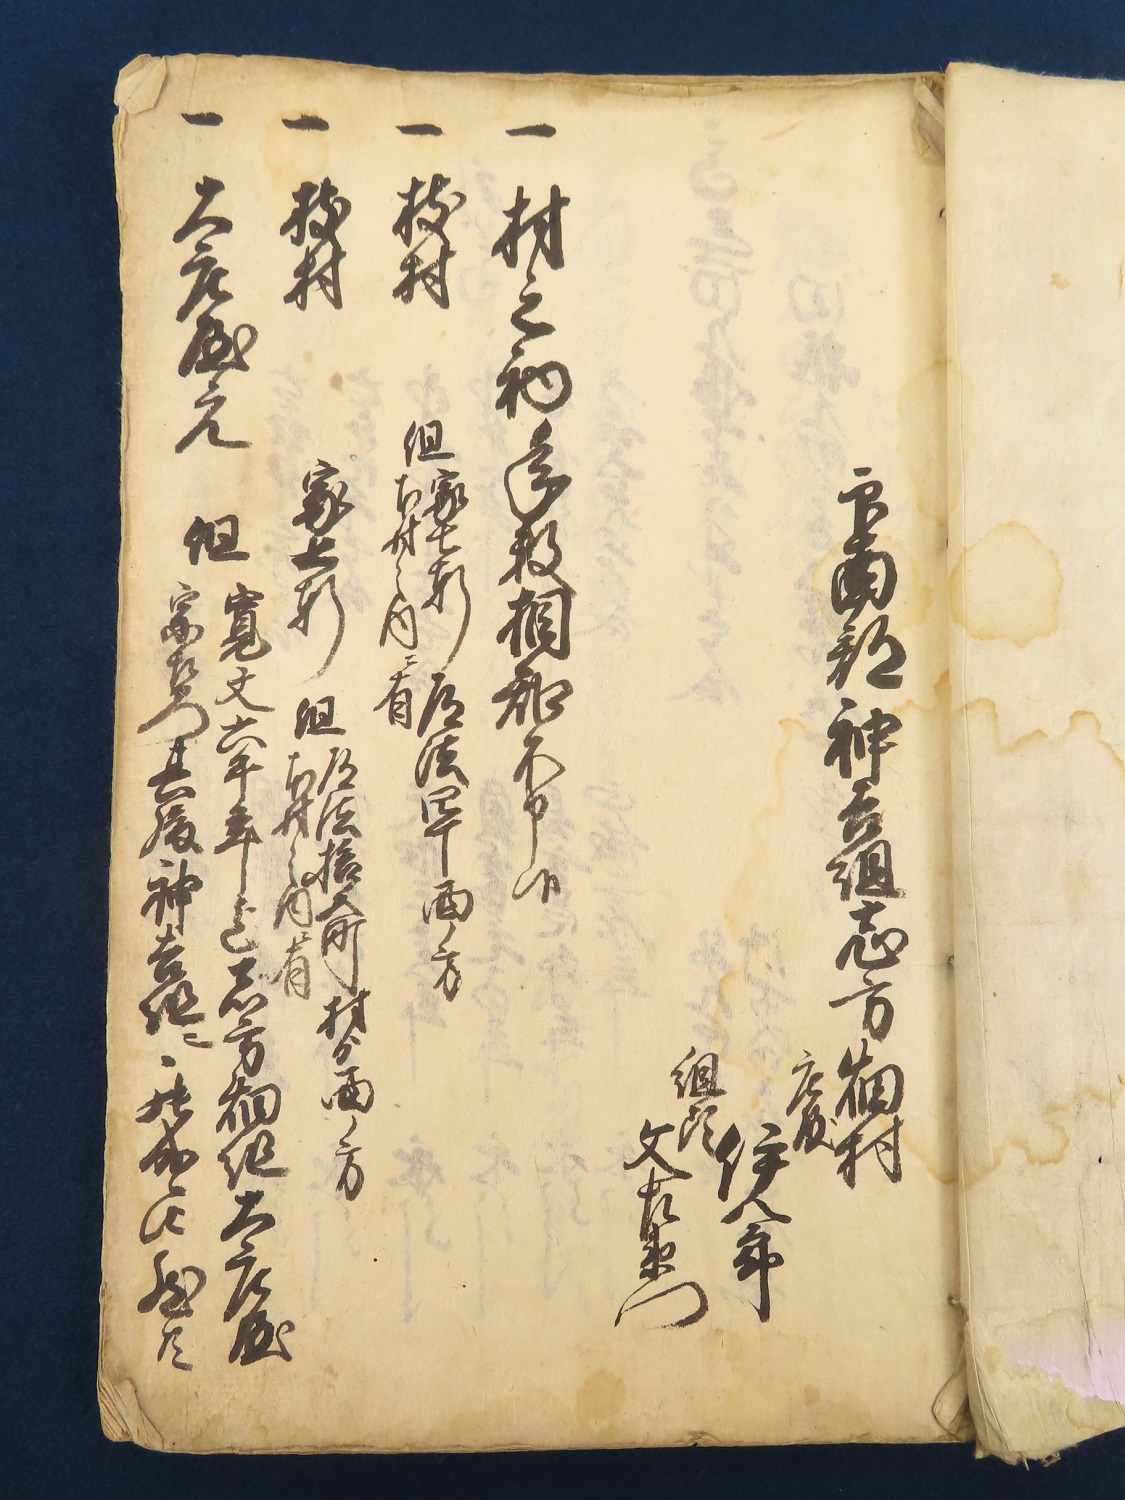 神戸 古本買取 古書出張買取 播磨国印南郡 和本 古文書